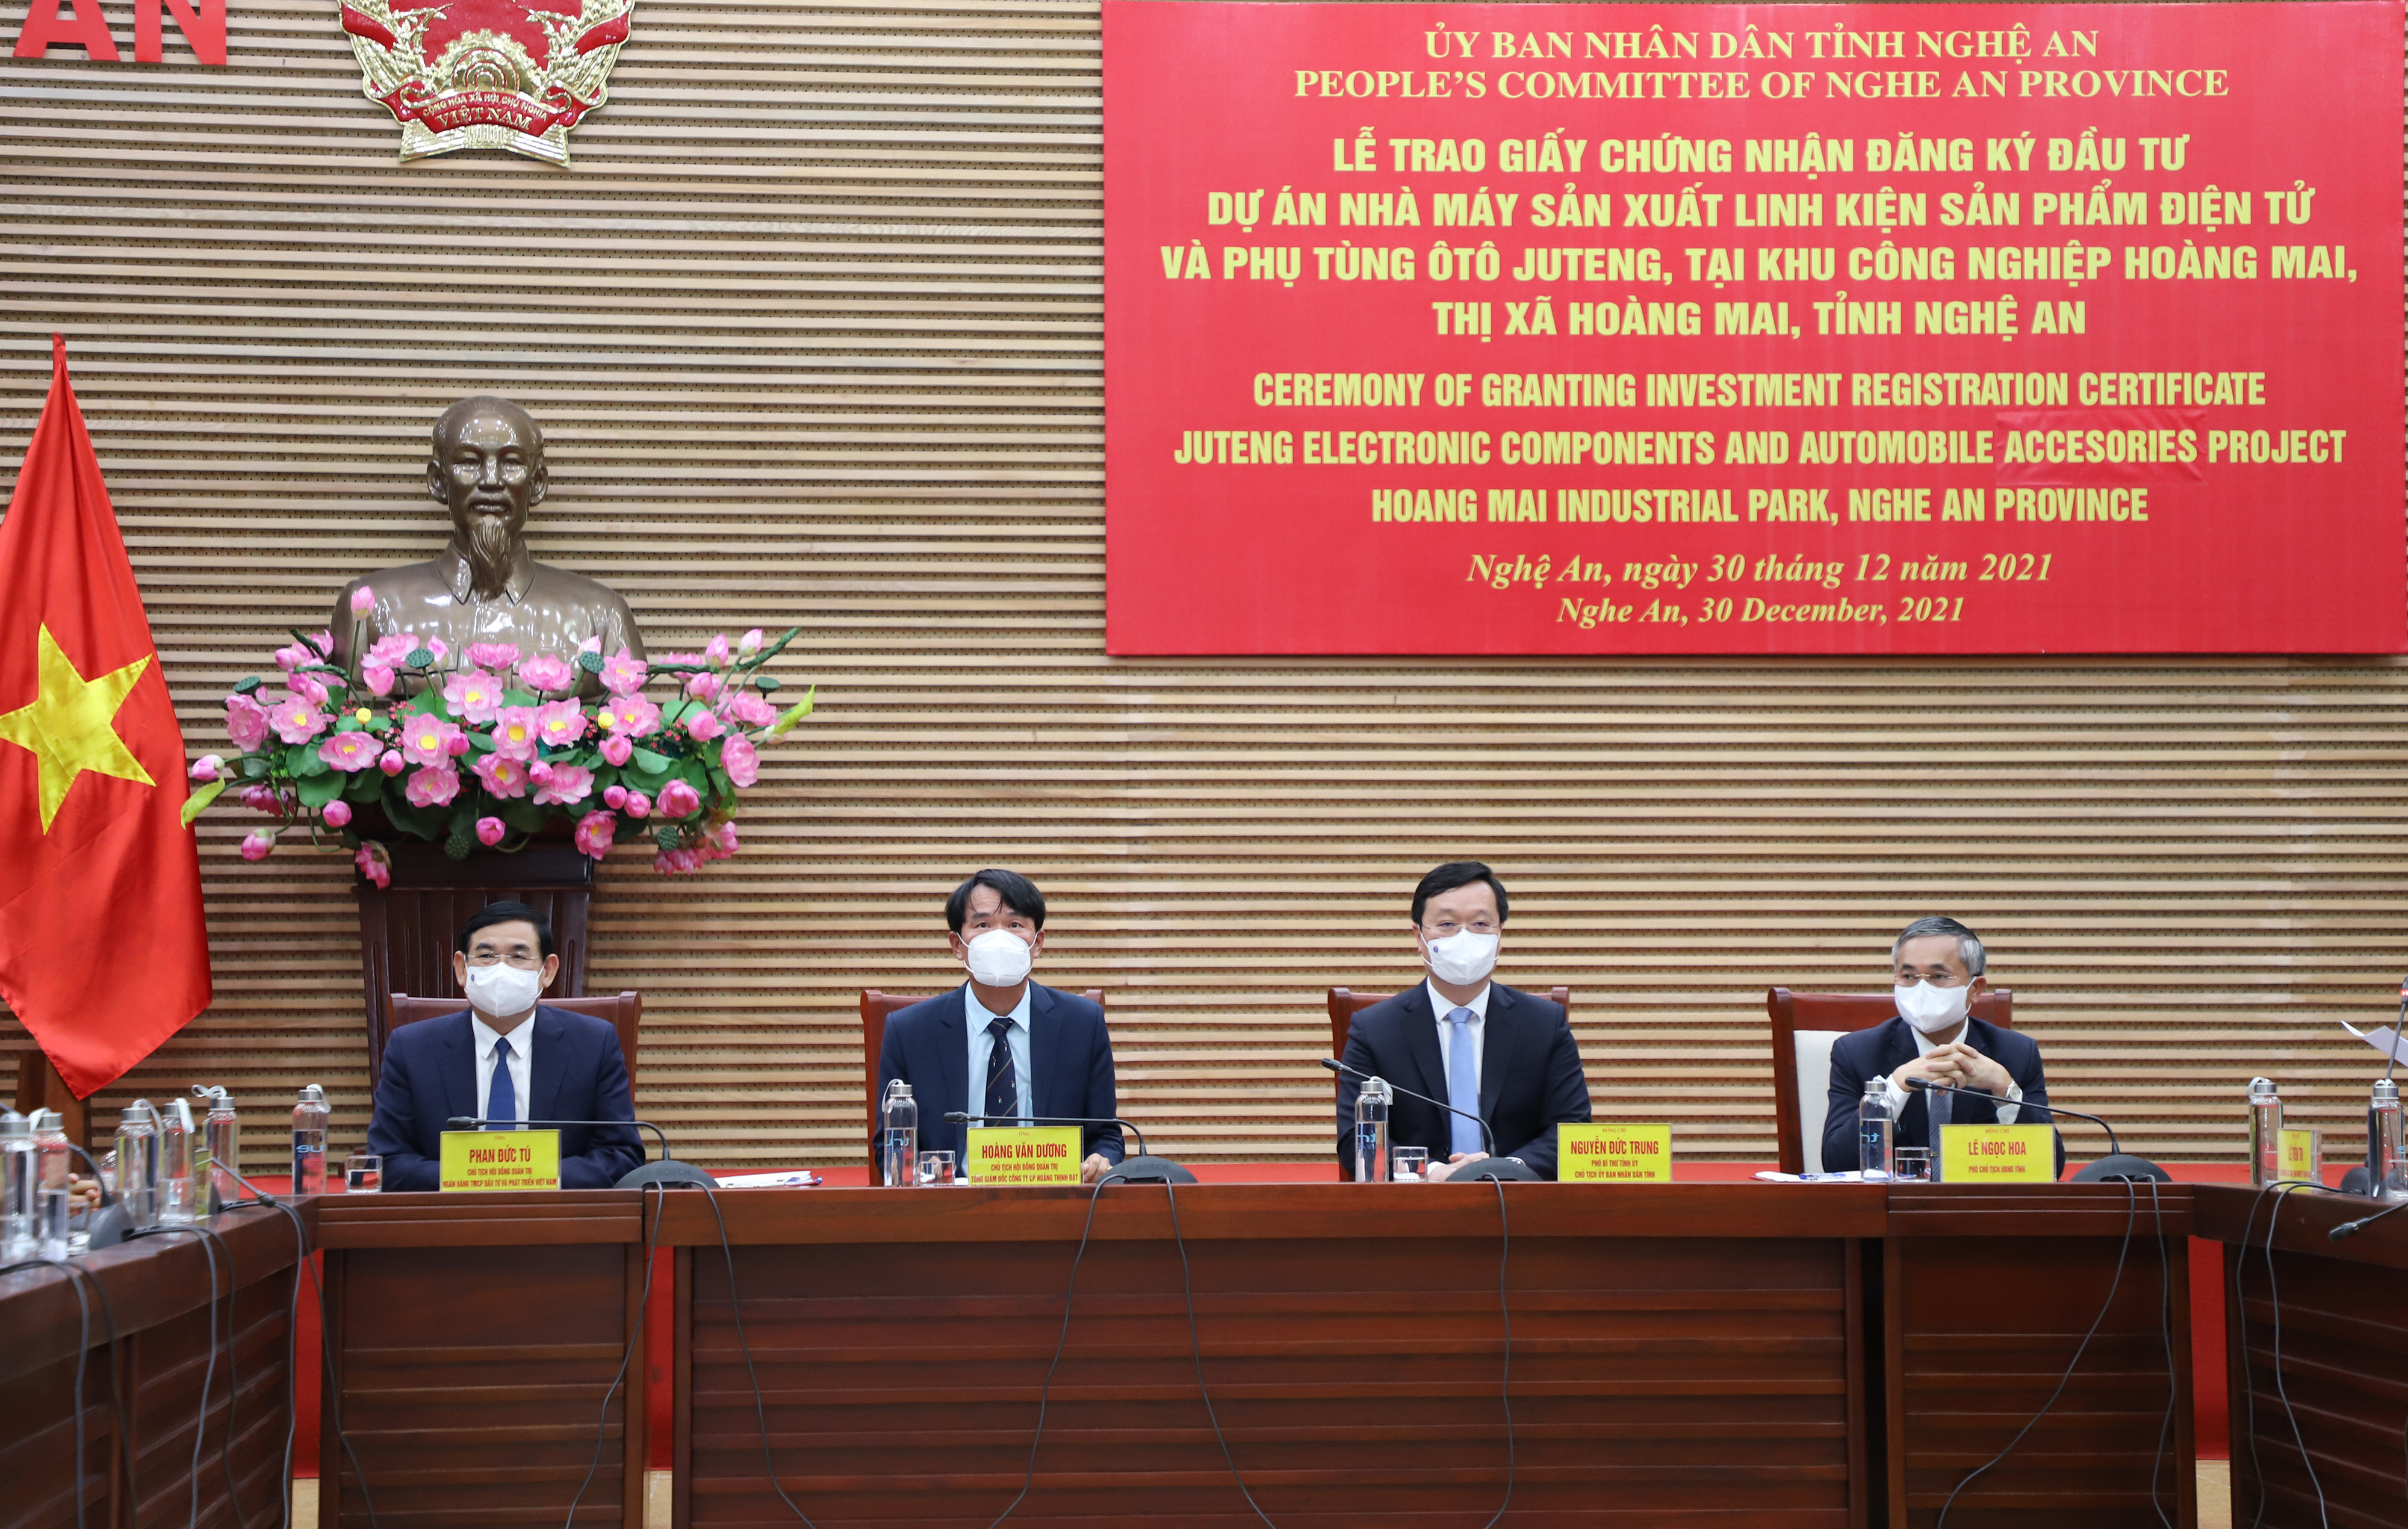 Các đồng chí lãnh đạo tỉnh, nhà đầu tư, ngân hàng Vietcombank dự buổi lễ. Ảnh: Phạm Bằng